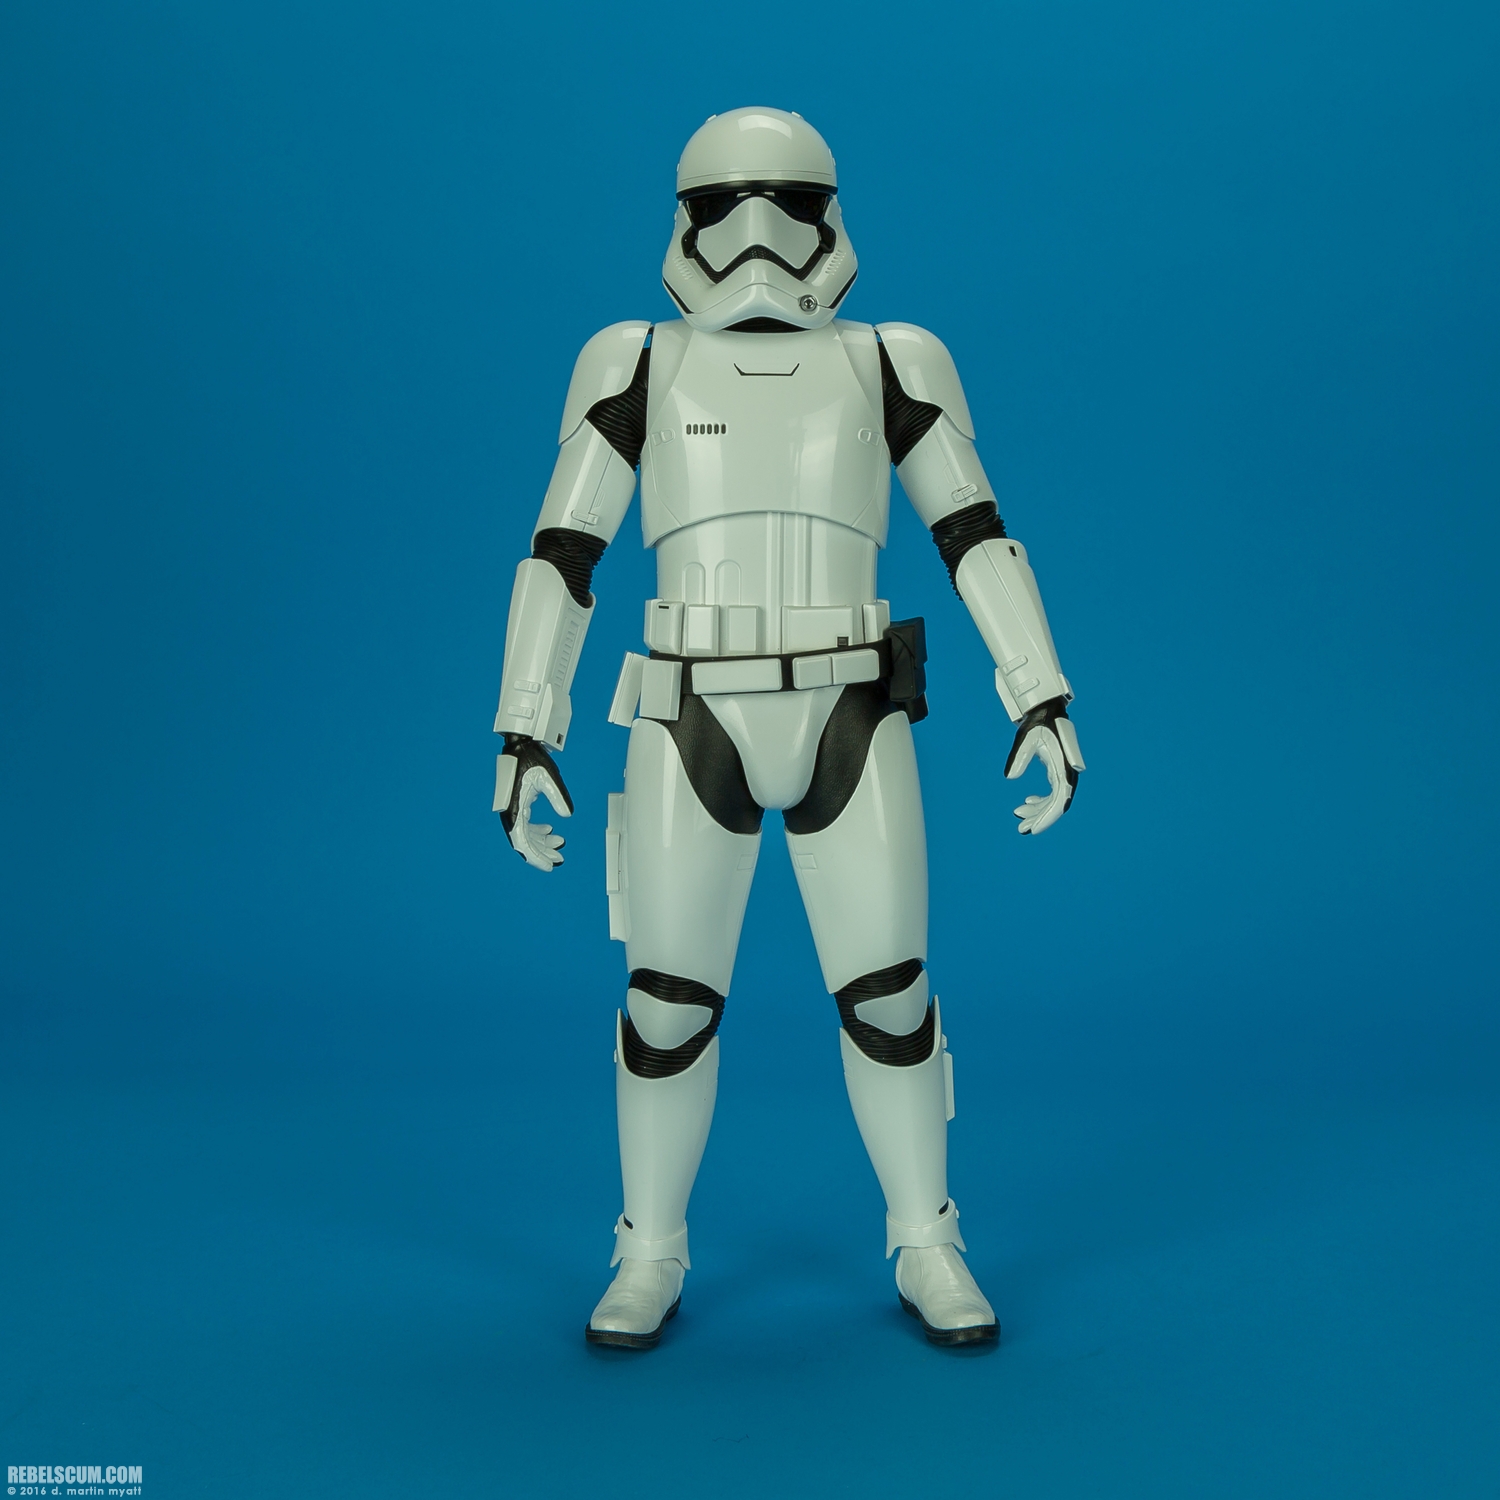 MMS346-Finn-First-Order-Riot-control-Stormtrooper-Hot-Toys-027.jpg